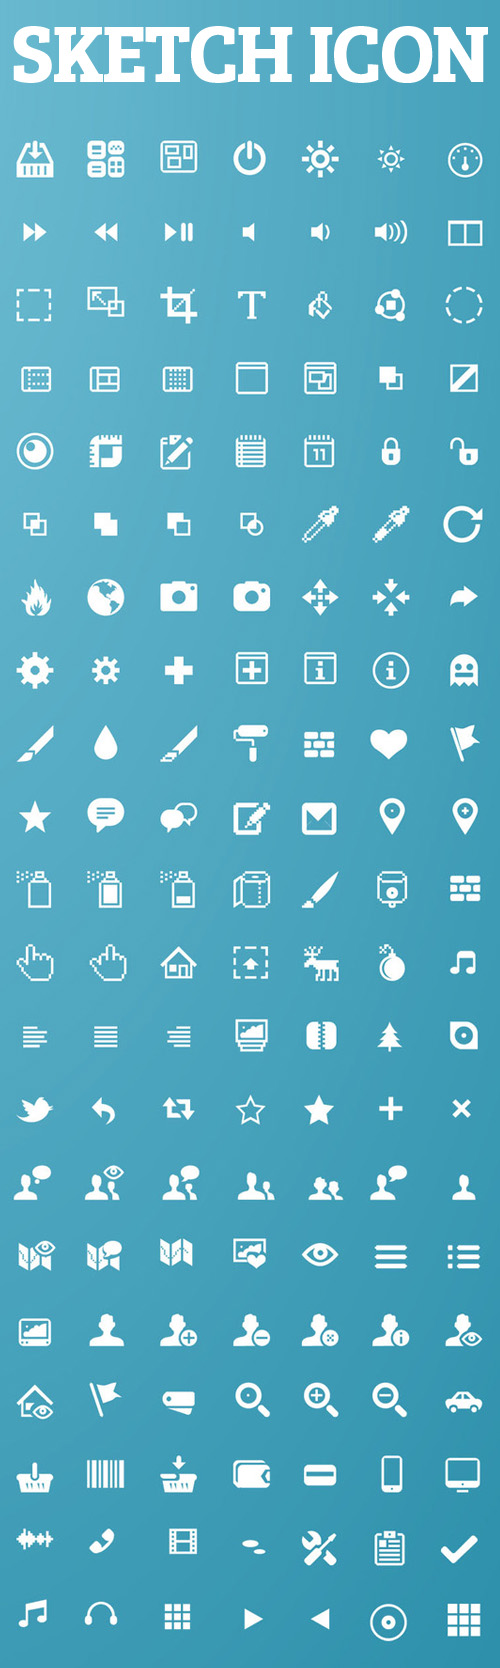 Sketch App Icons For Web UI Design